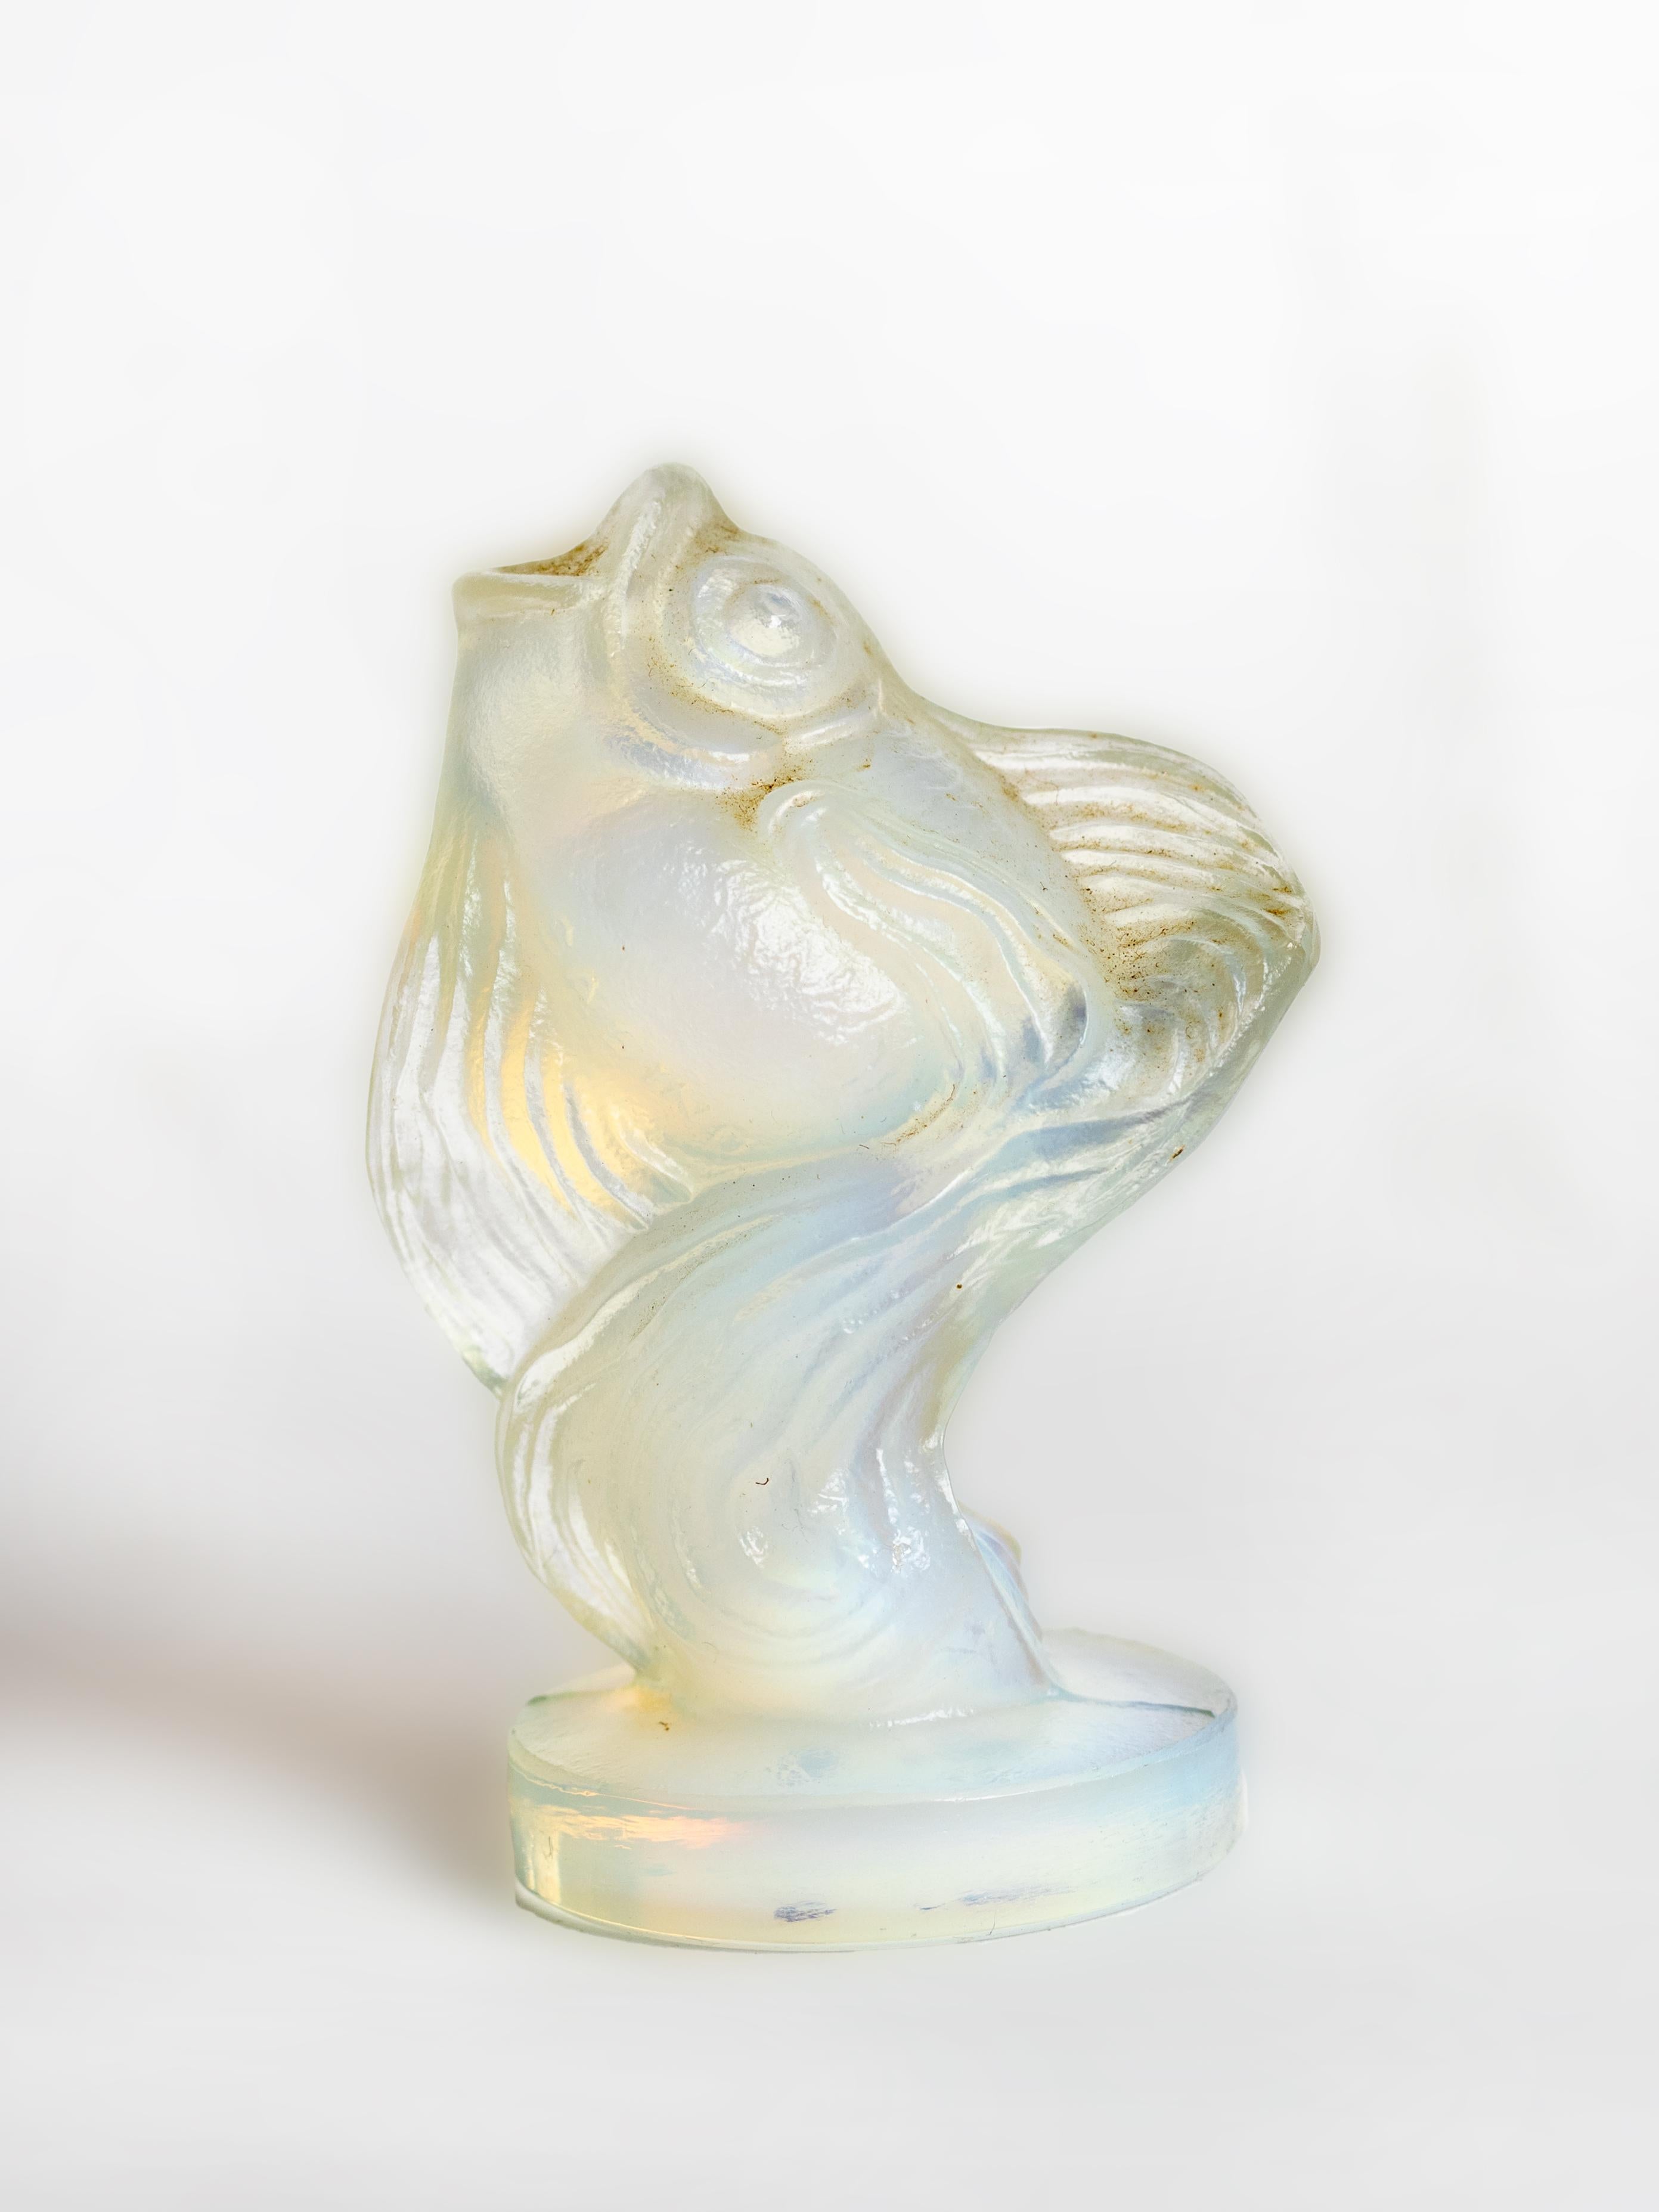 Figurine en verre opalin de style Art déco représentant un poisson, avec bouche en l'air, par Marius Ernest Sabino.
Vers 1933
